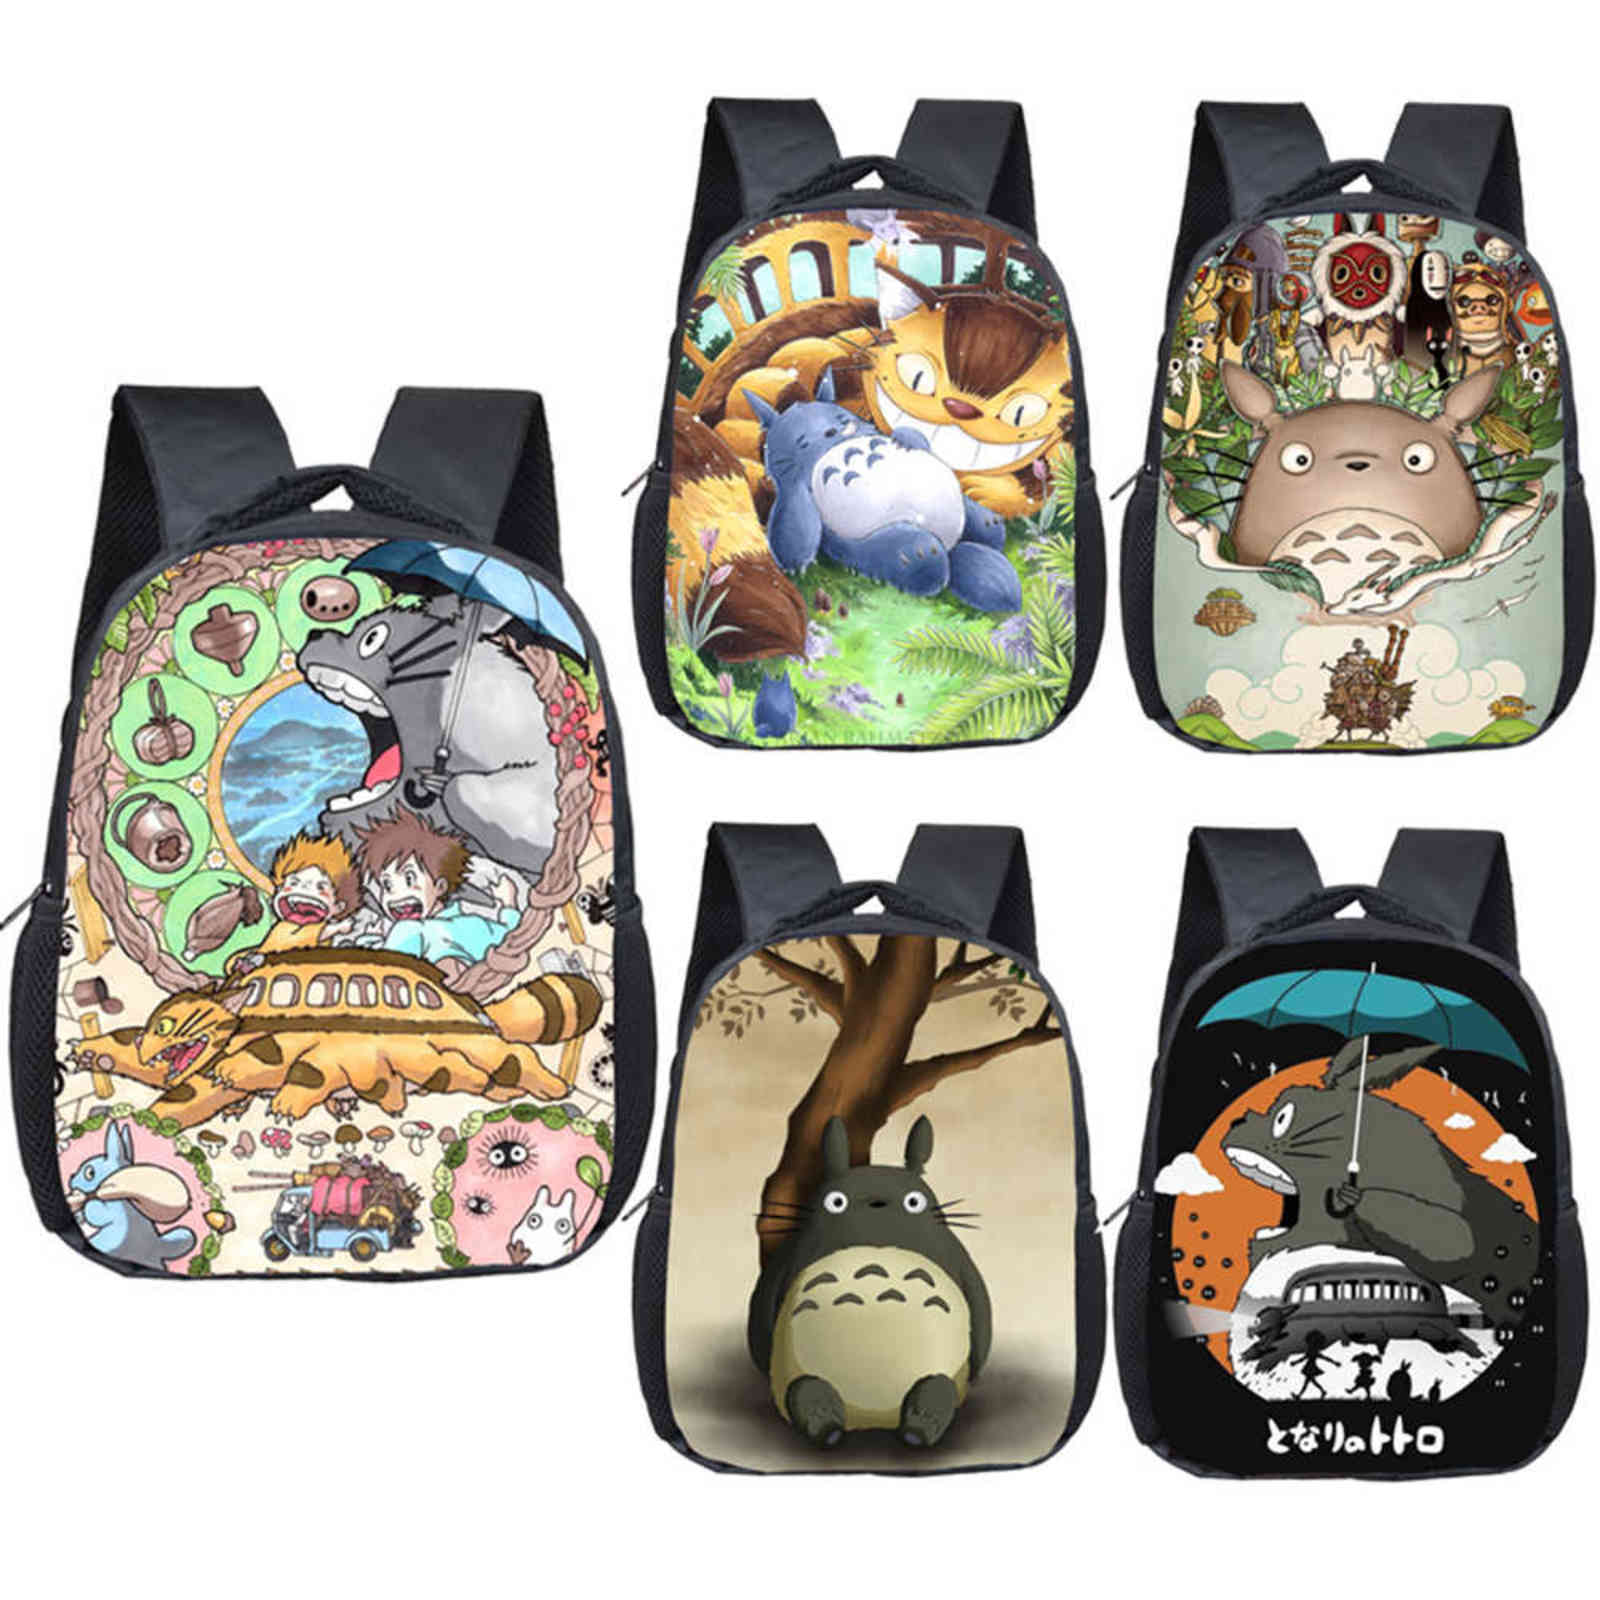 

Anime Totoro backpack children school bags boys girls cartoon kindergarten backpack kids toddler bags bookbag gift 211110, 12longmao06